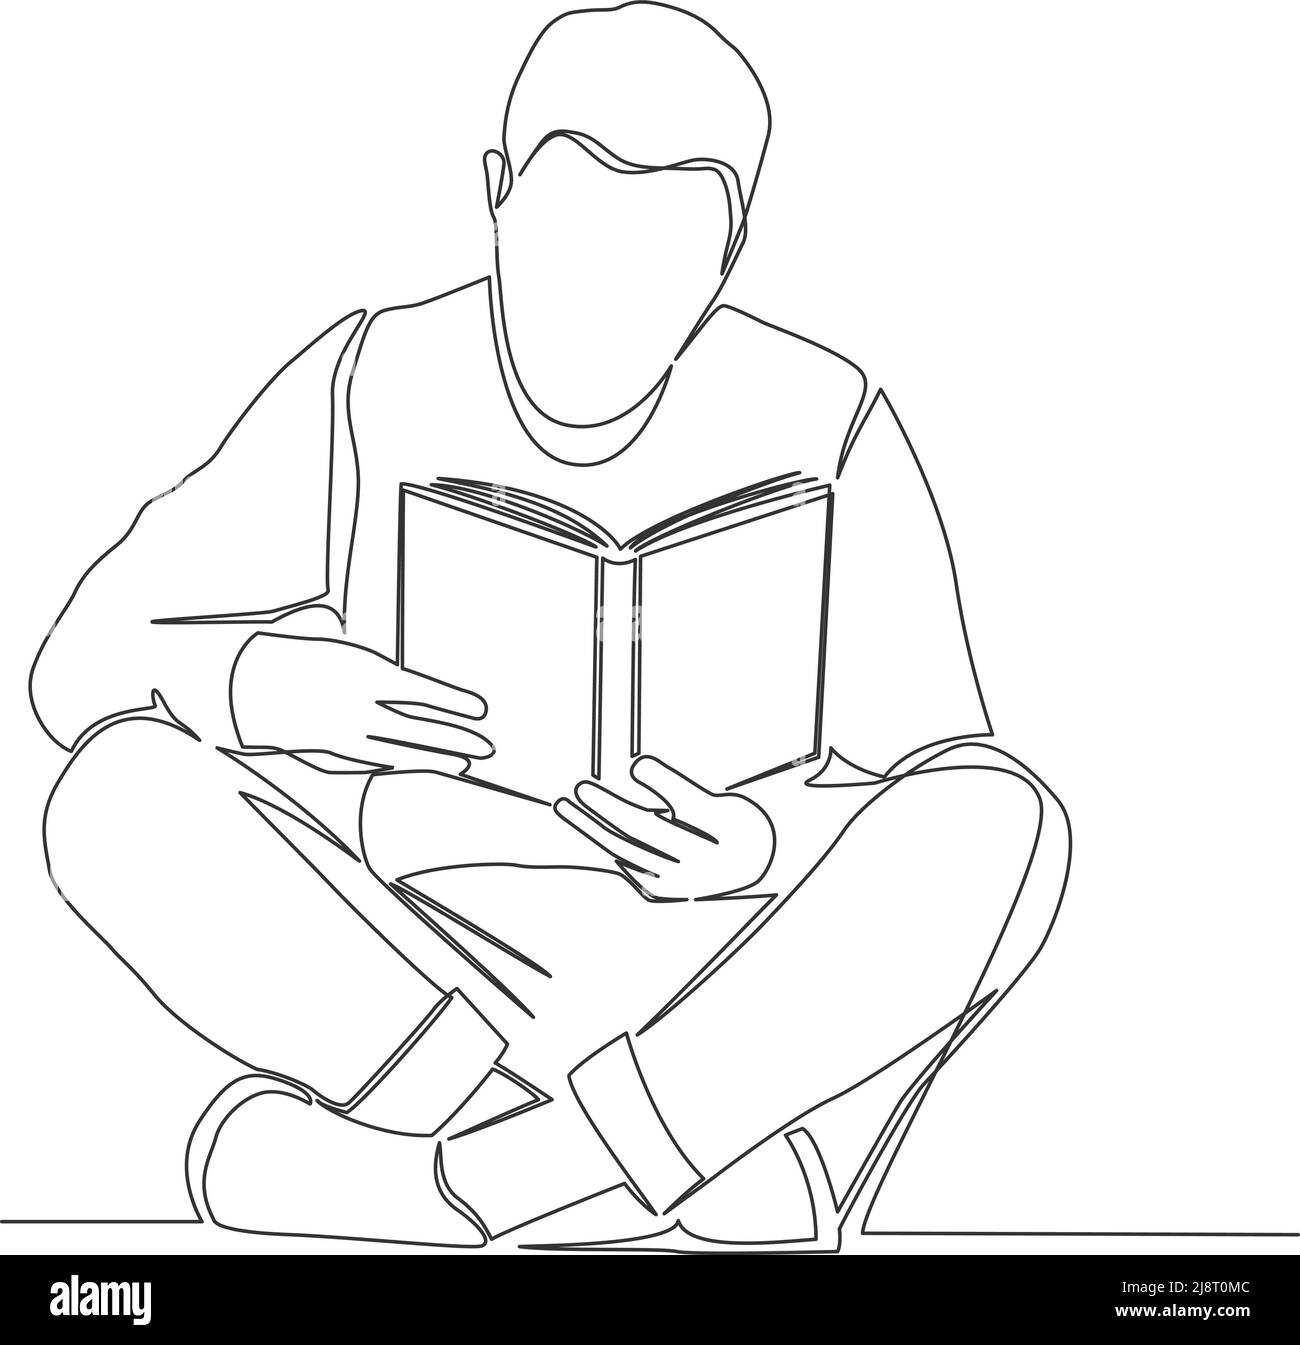 Einzeilige Zeichnung der Person, die Buch liest, sitzend mit gekreuzten Beinen auf dem Boden, Linienkunst Vektordarstellung Stock Vektor